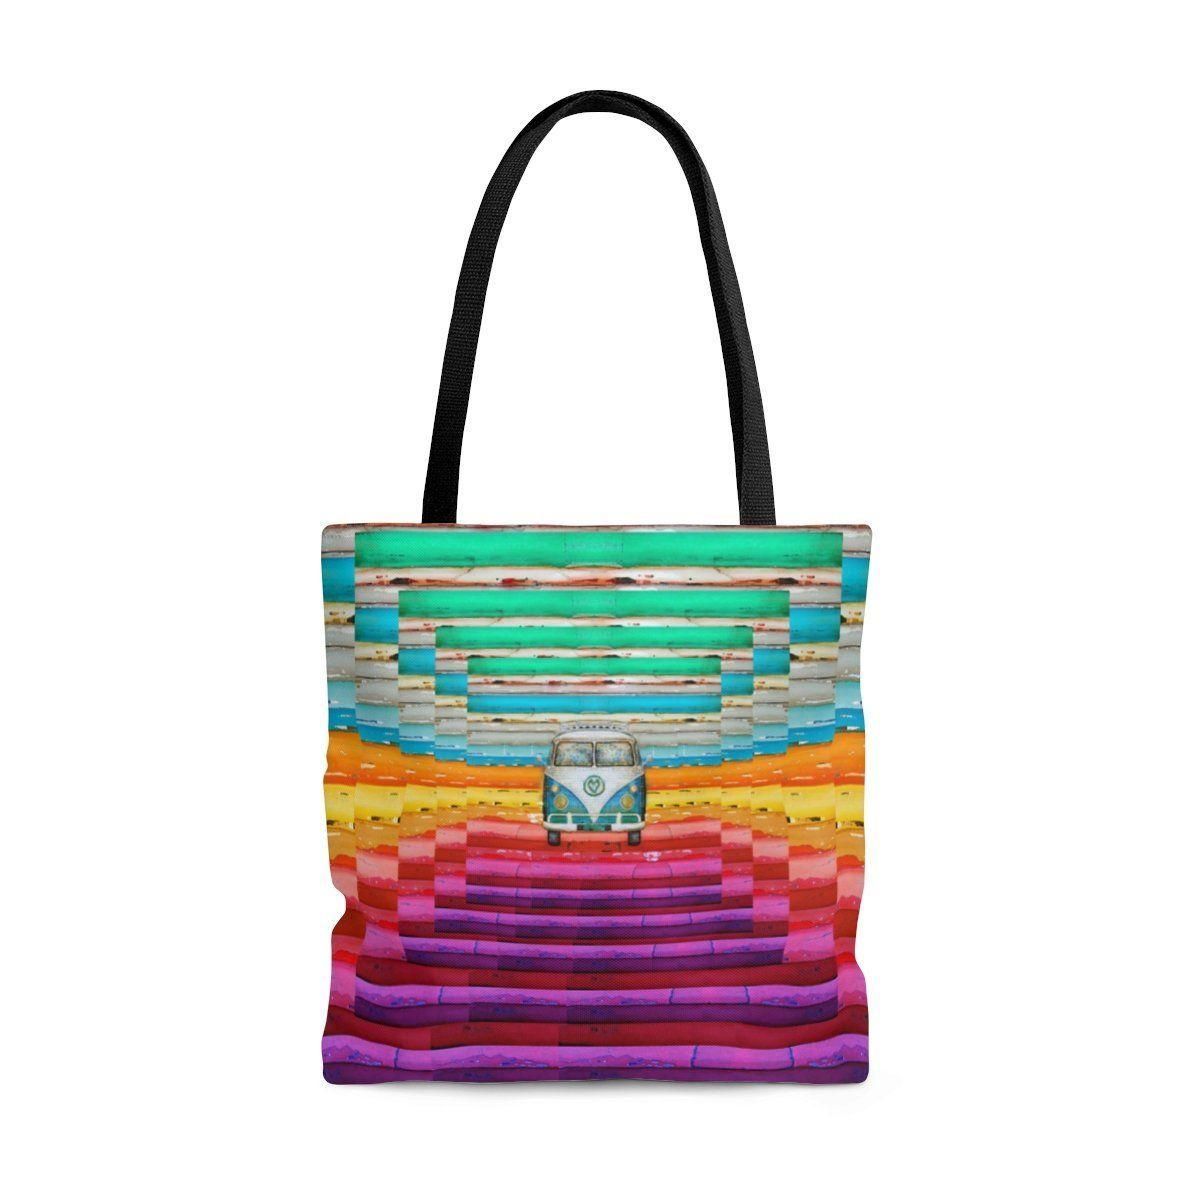 Unique Color Hippie Van Printed Tote Bag